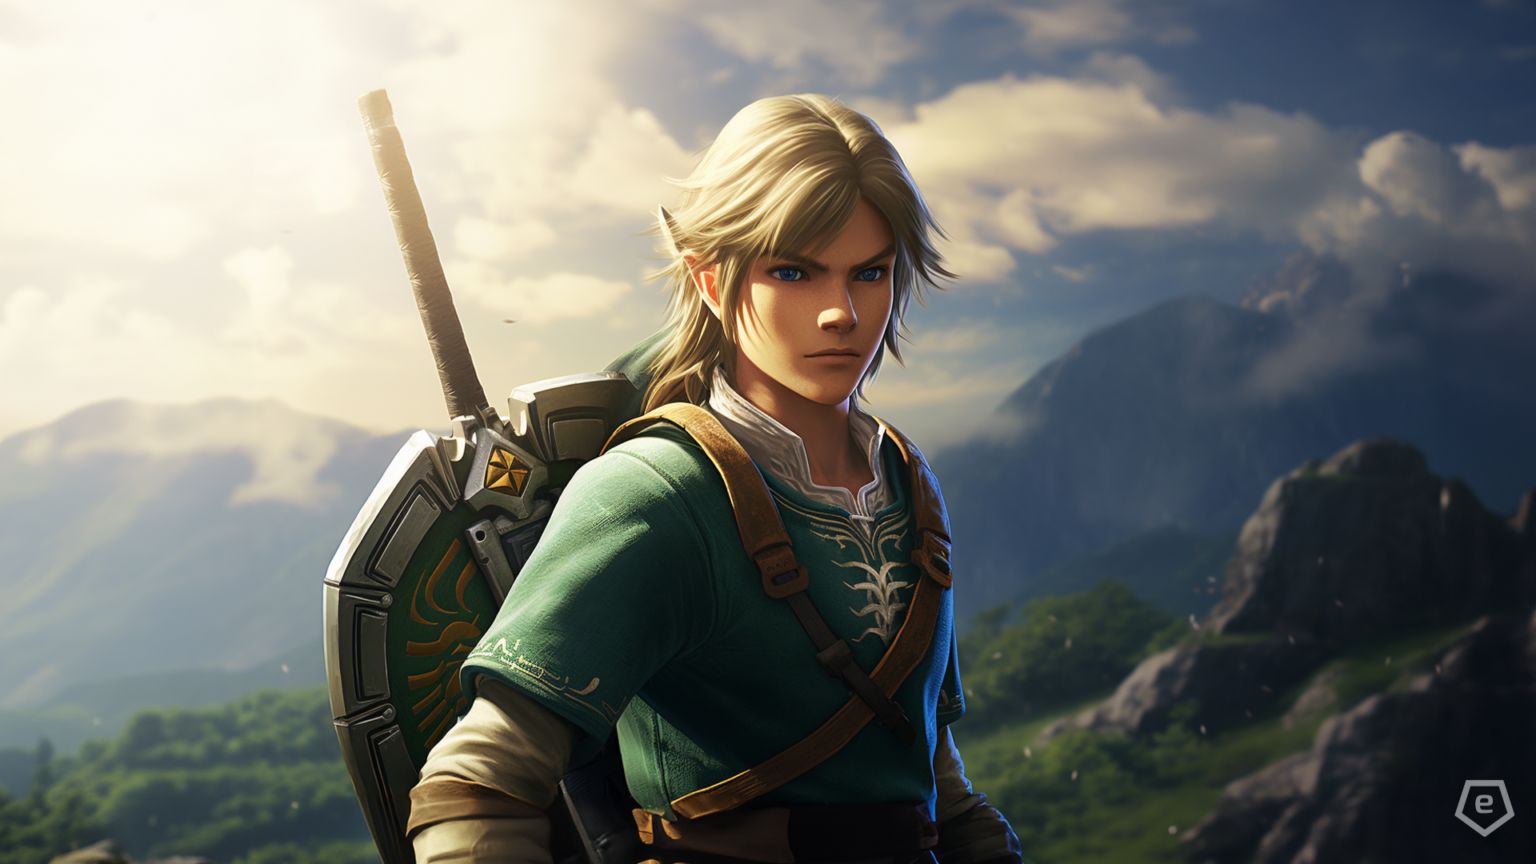 Nintendo bestätigt einen Live-Action-Film von dem Spiel The Legend of Zelda. Einige Fans sehen Tom Holland in der Rolle als Link.